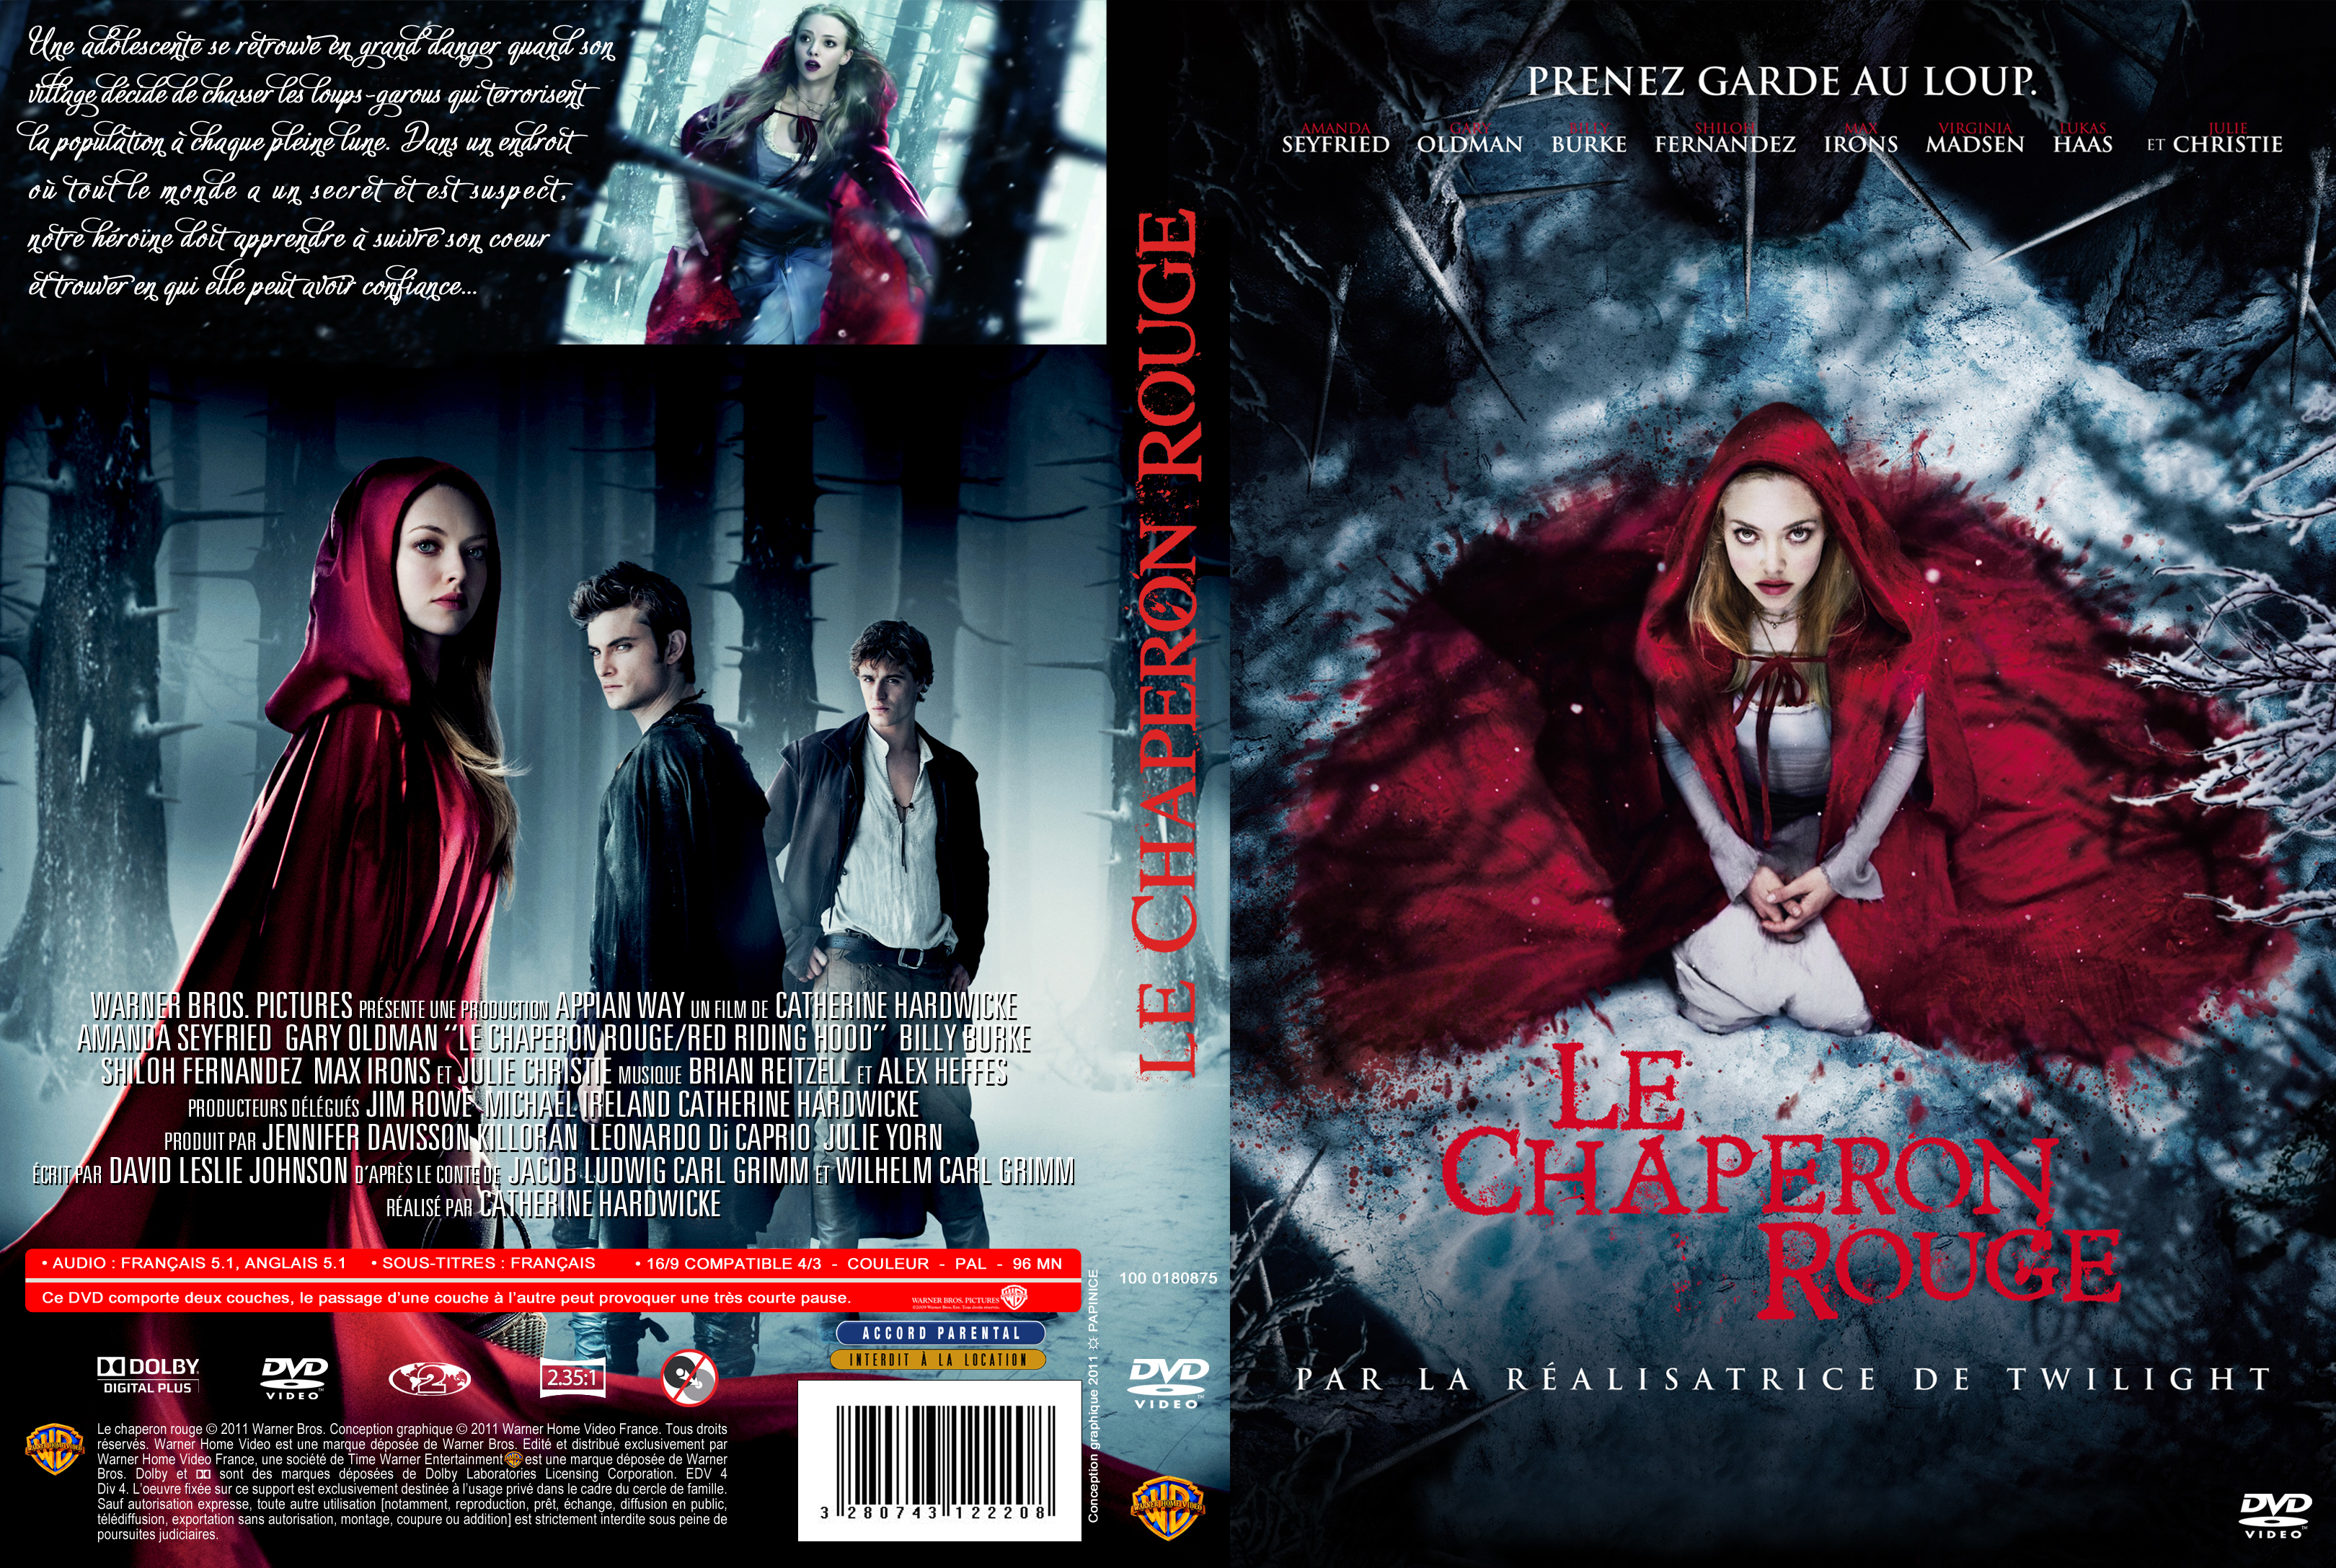 Jaquette DVD Le chaperon rouge custom